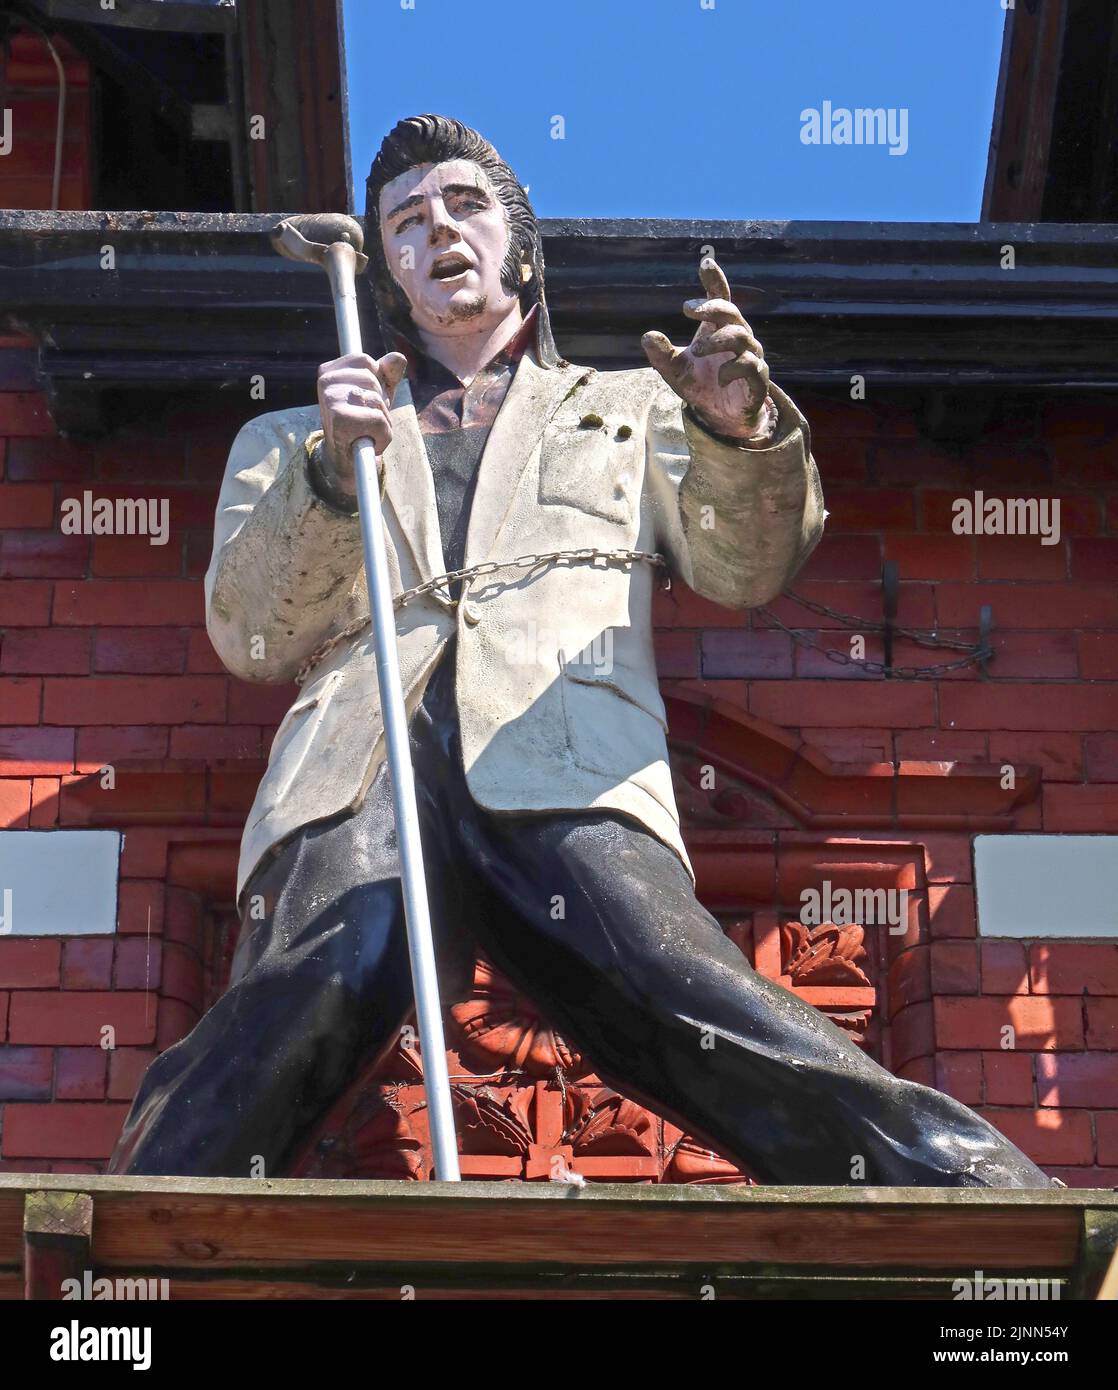 Statue d'Elvis Presley, Hôtel de chemin de fer, Pillory St, Nantwich, Cheshire, ANGLETERRE, ROYAUME-UNI, CW5 5SS Banque D'Images